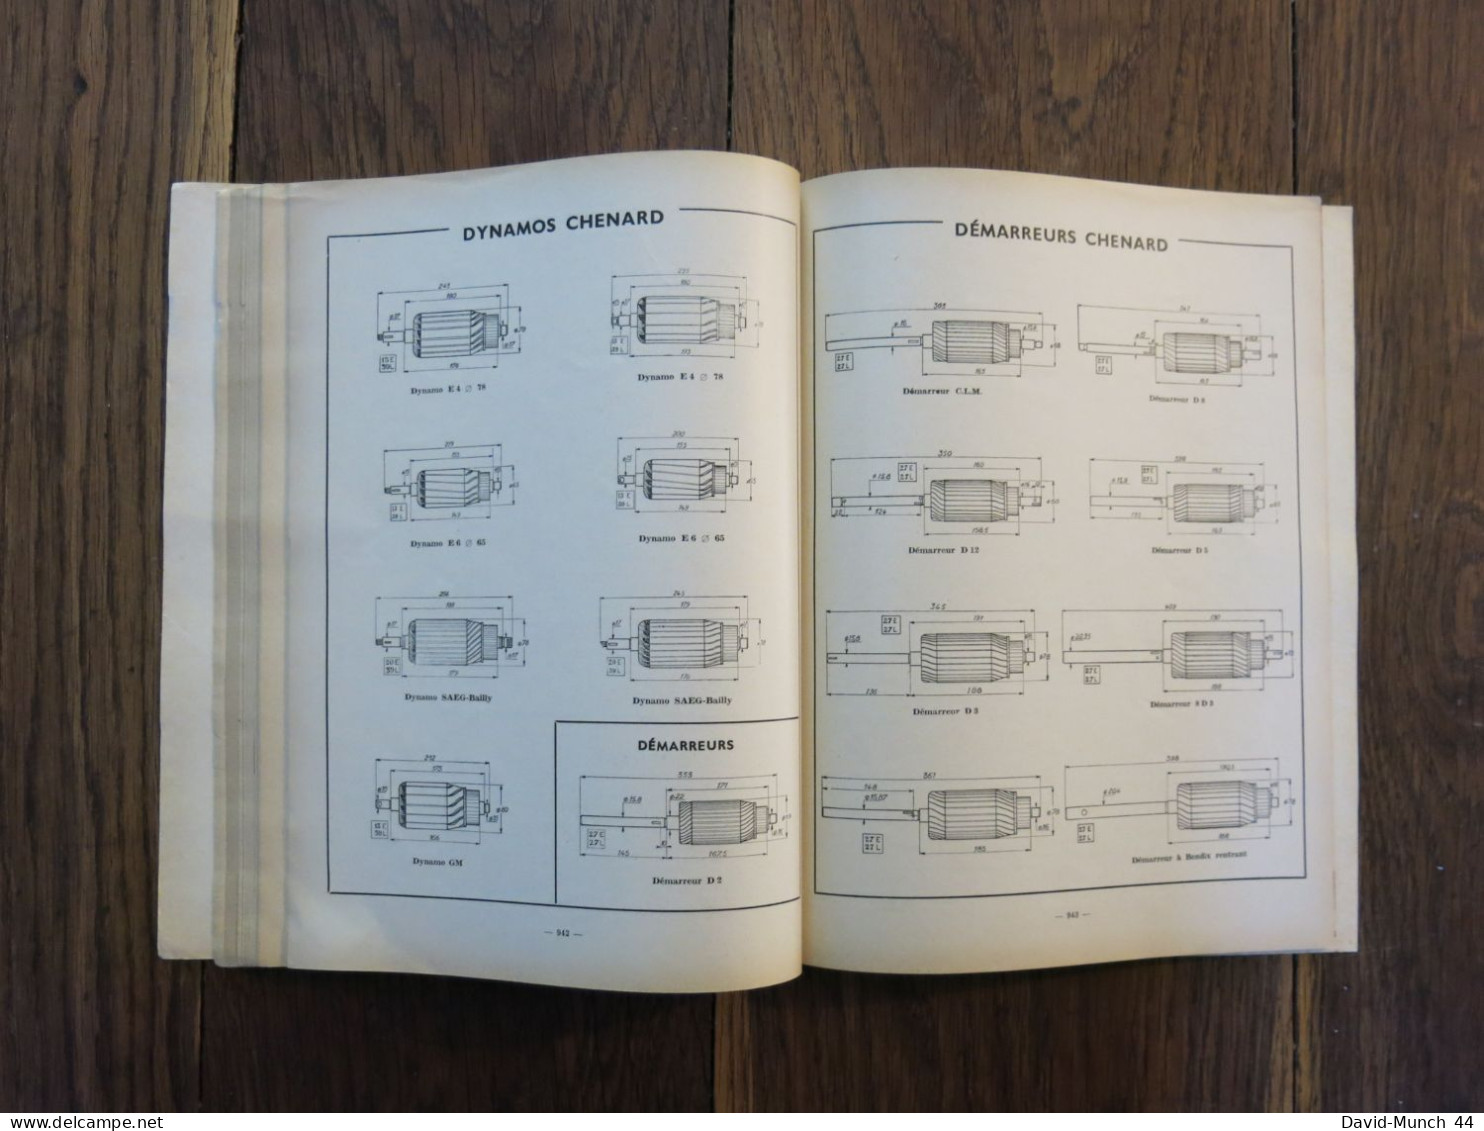 Revue technique Automobile # 92. Décembre 1953